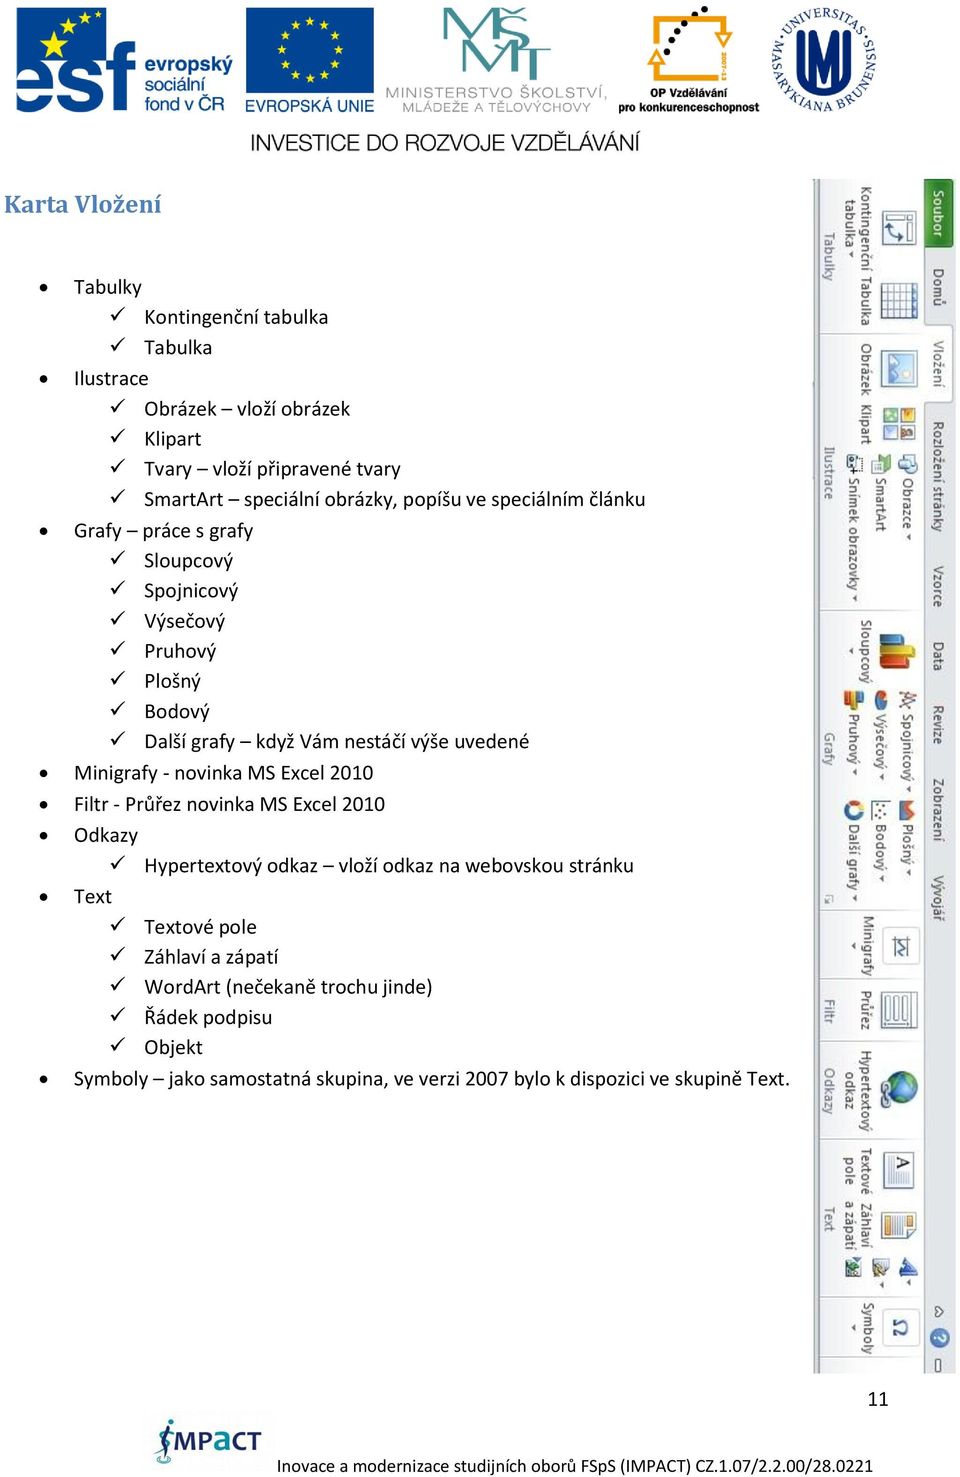 Minigrafy - novinka MS Excel 2010 Filtr - Průřez novinka MS Excel 2010 Odkazy Hypertextový odkaz vloží odkaz na webovskou stránku Text Textové pole